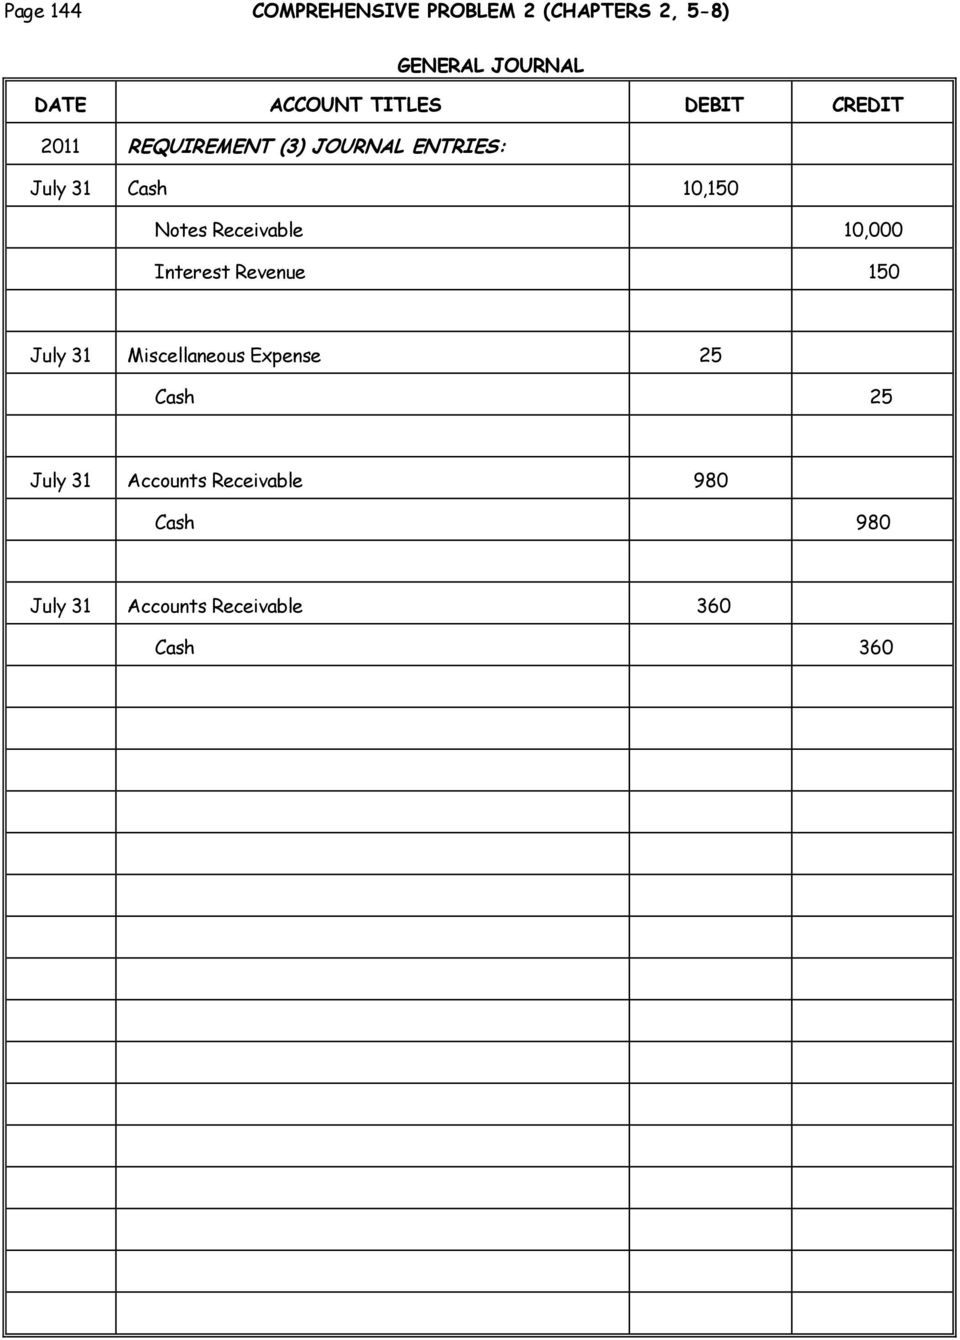 Notes Receivable 10,000 Interest Revenue 150 July 31 Miscellaneous Expense 25